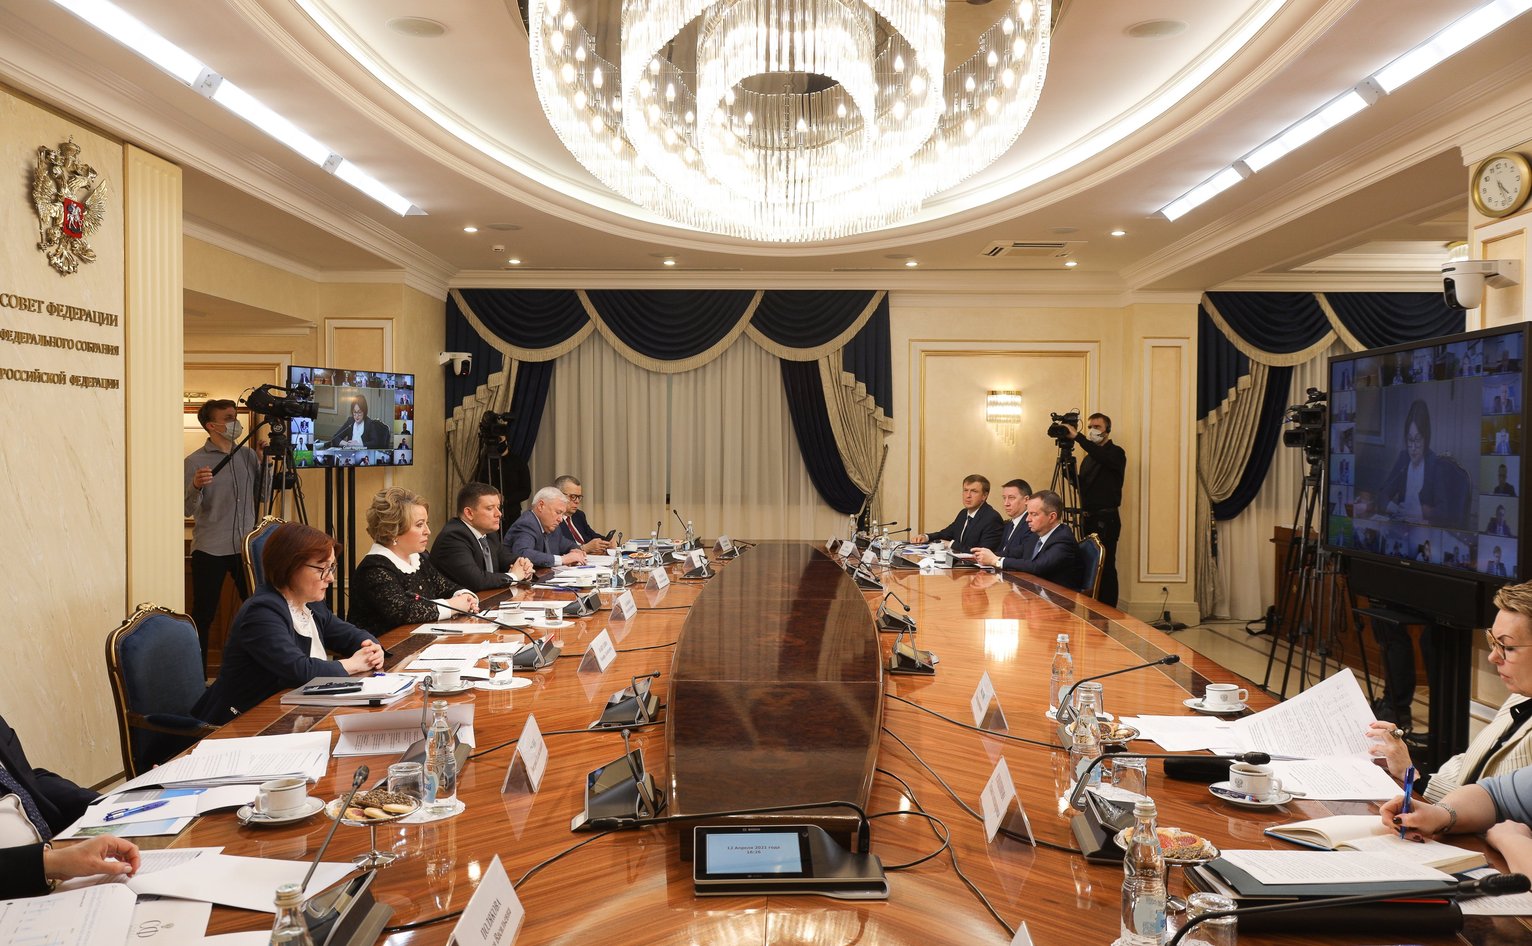 южное федеральное управление банка россии фотографии руководителей